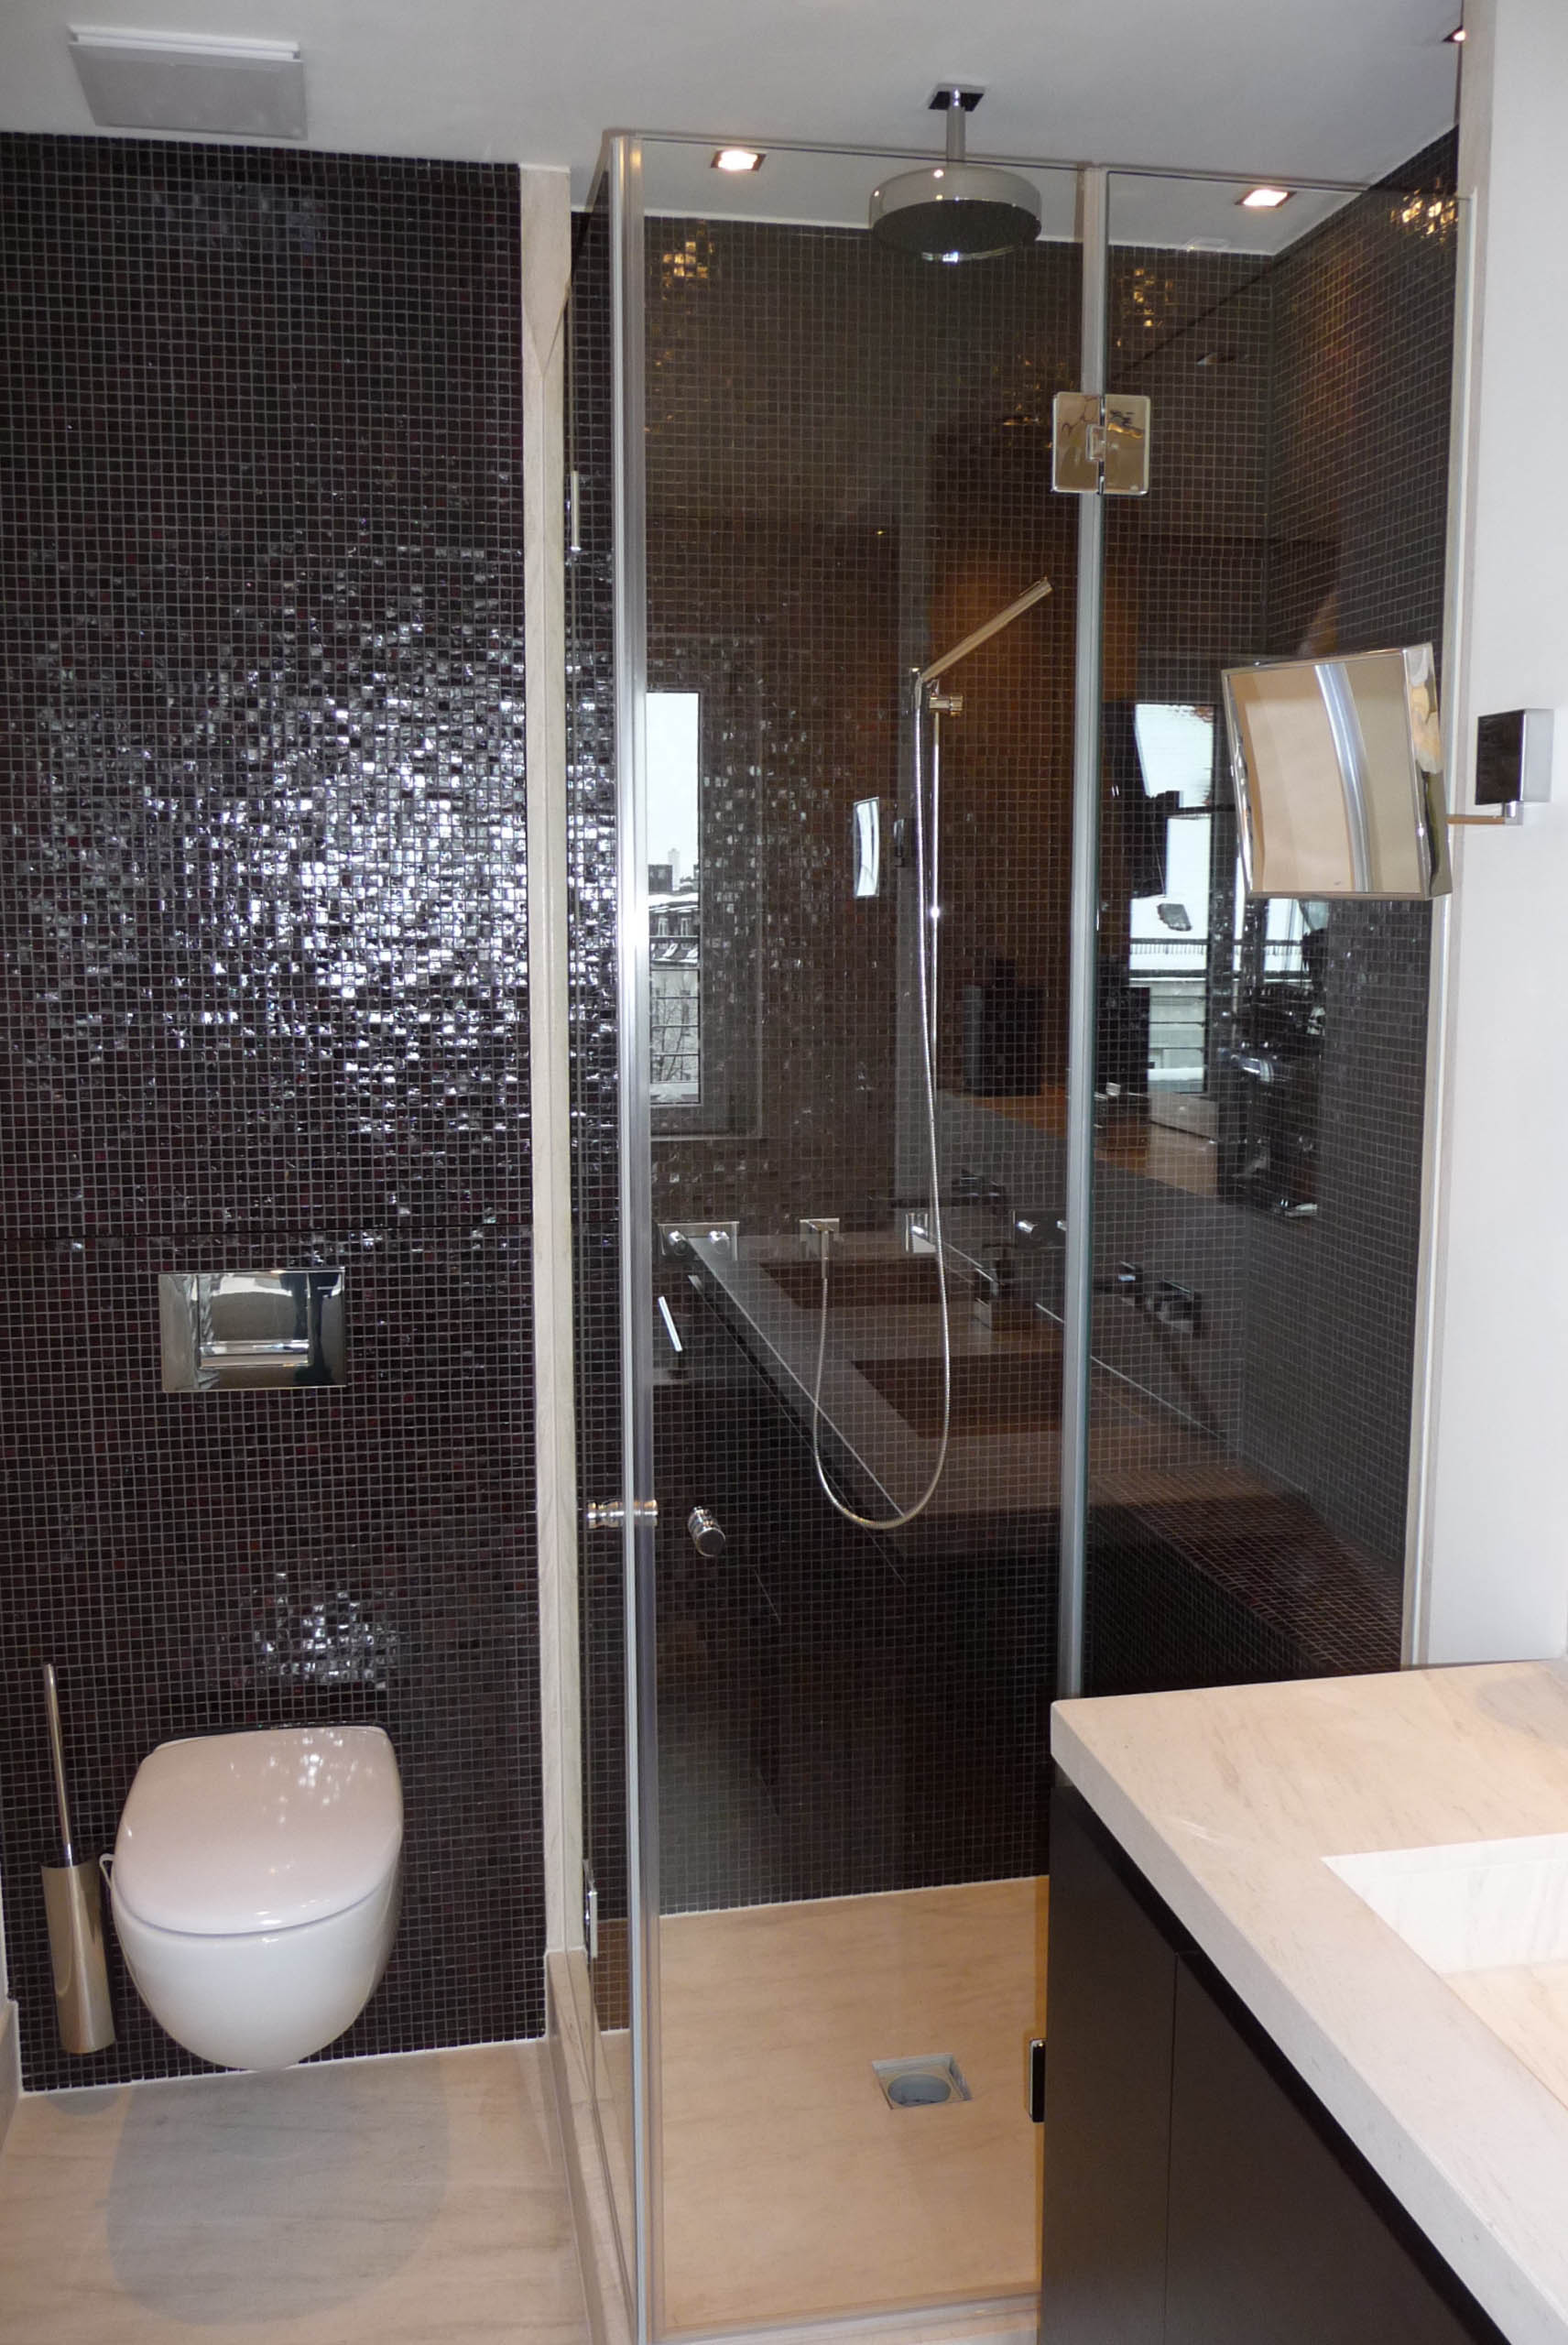 Dusch und WC Rückwand in Glasmosaik